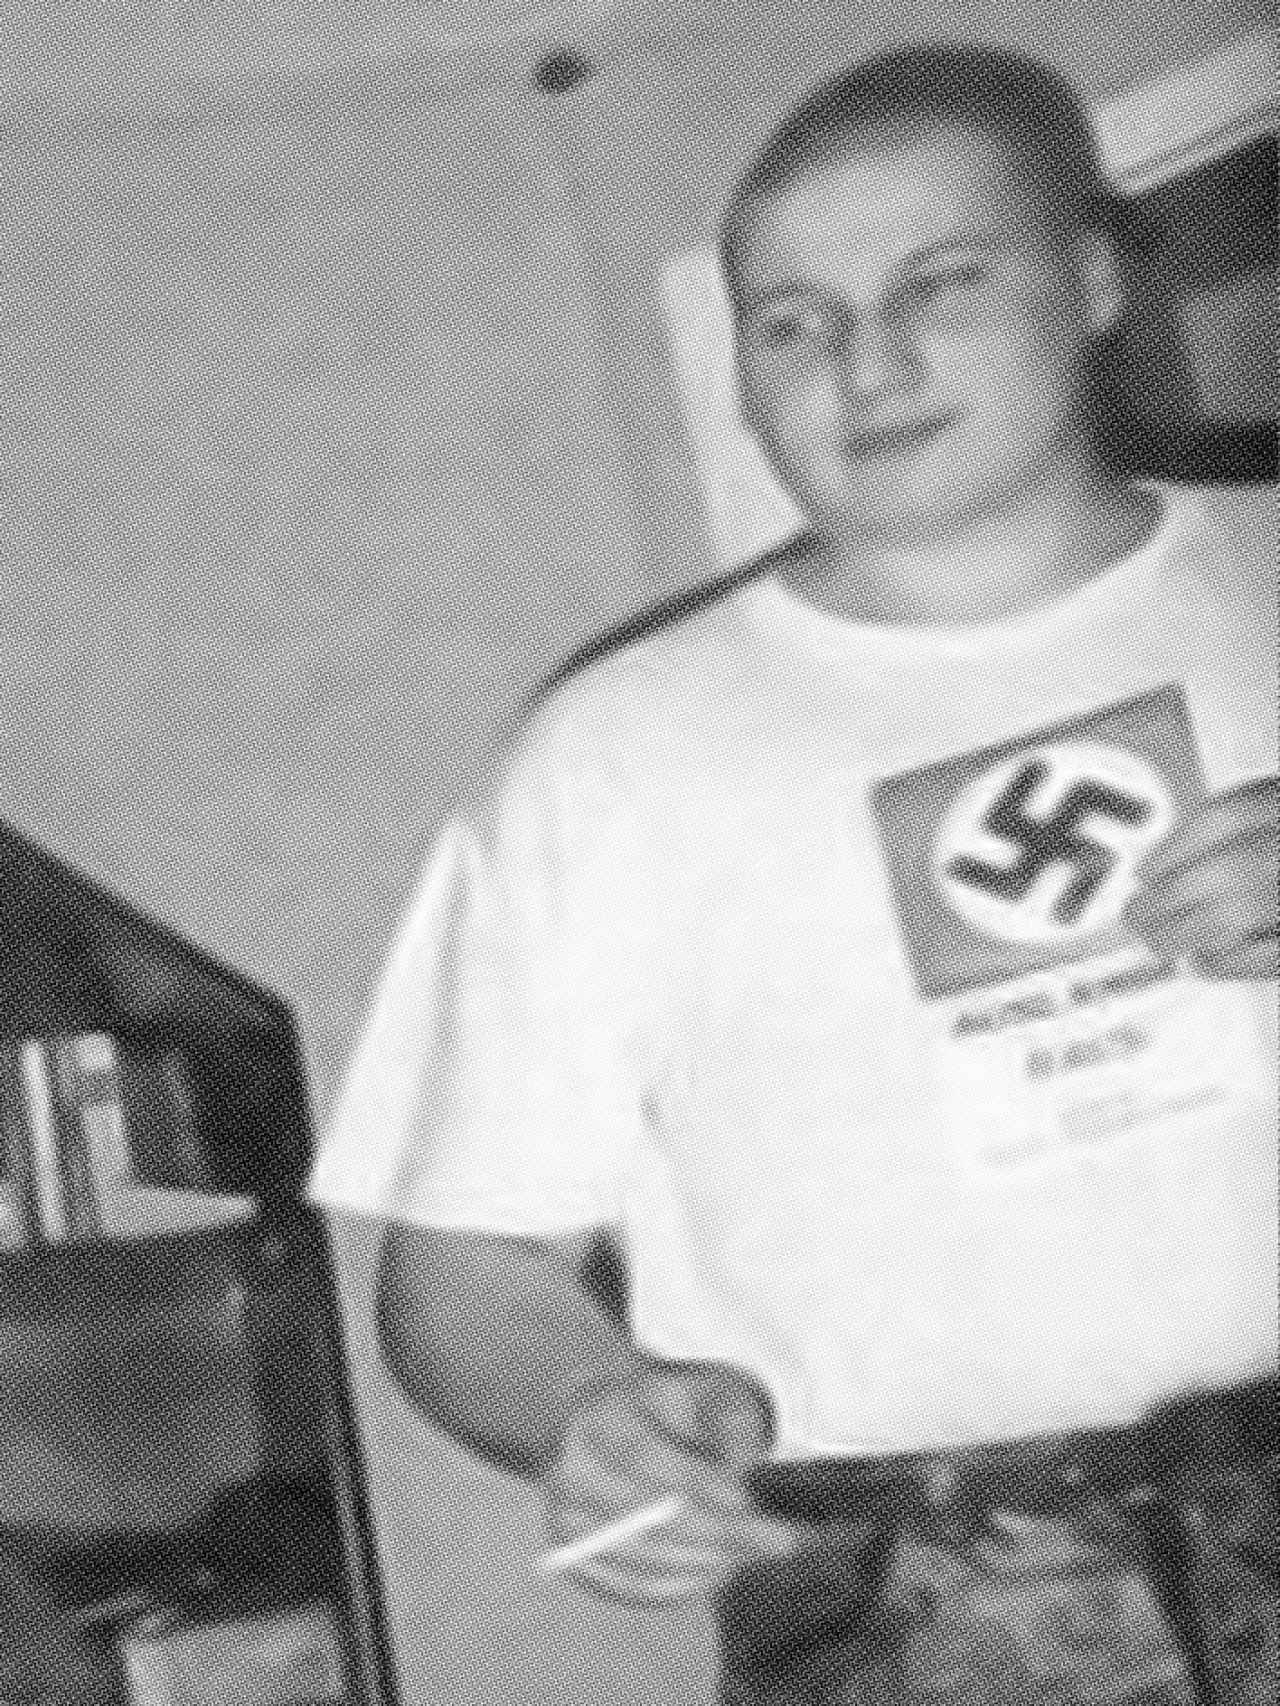 Schmidt, en una foto tomada en 1993, donde se le puede ver con una camiseta con una esvástica.